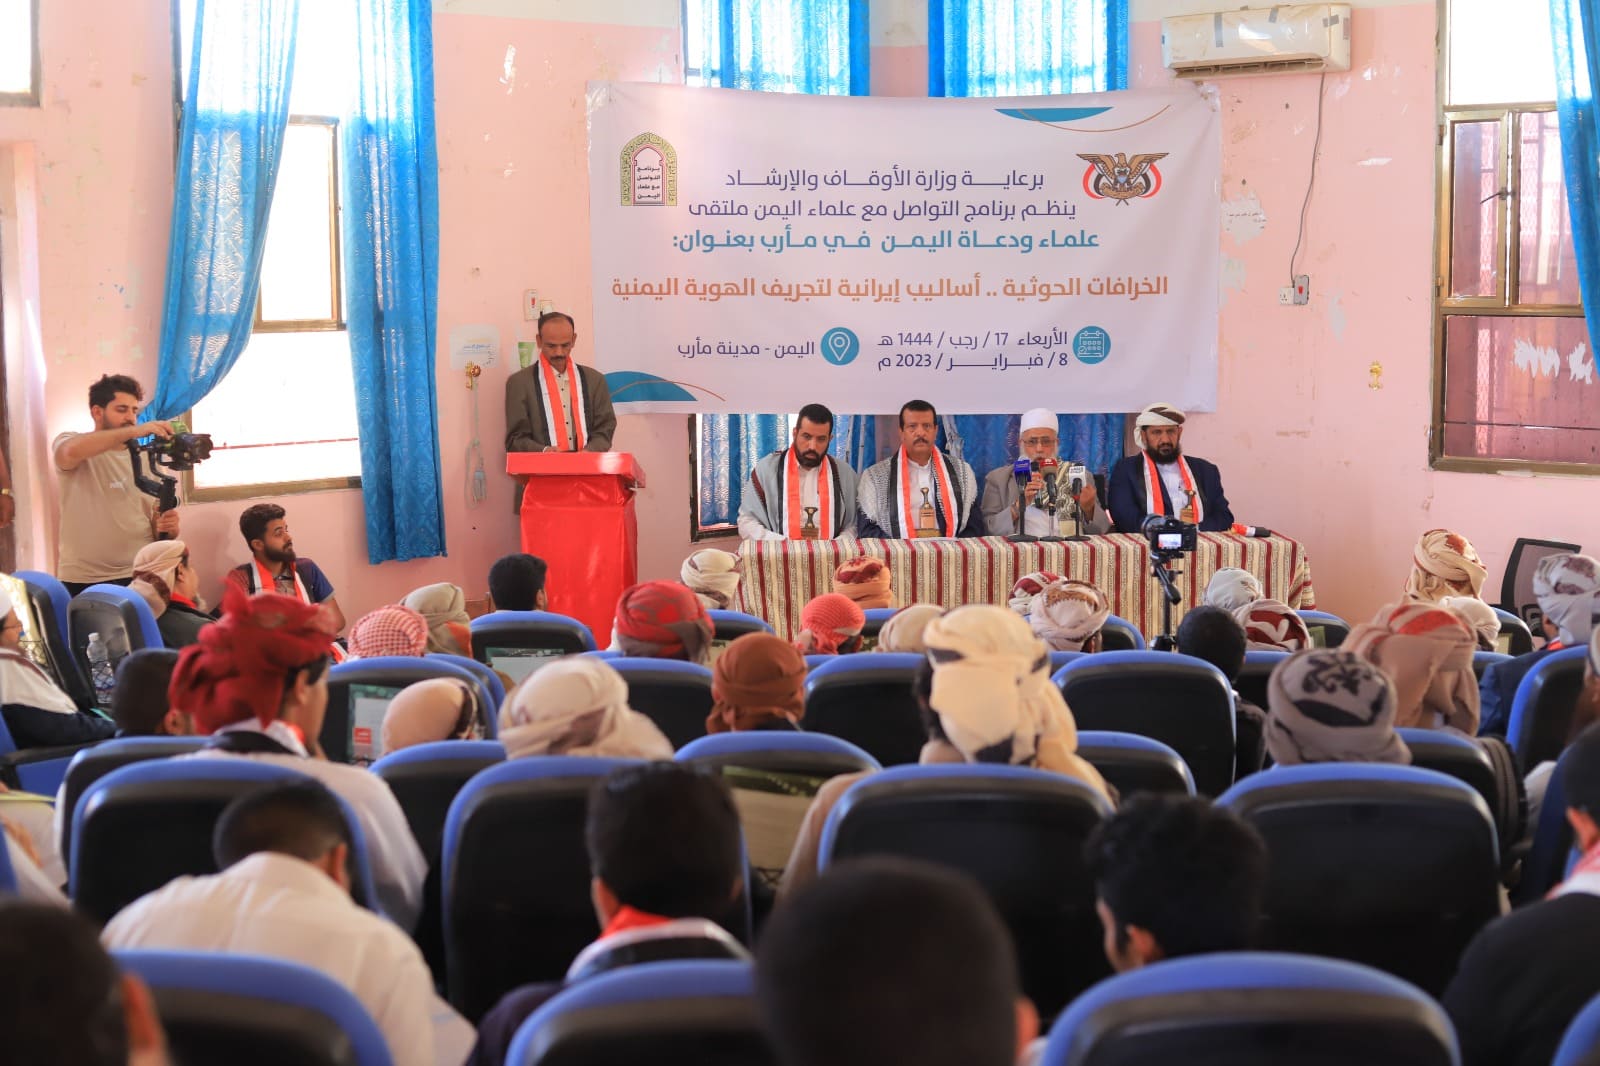 برنامج التواصل مع علماء اليمن ينظم ملتقى دعوي في مأرب للتحذير من الخرافات الحوثية